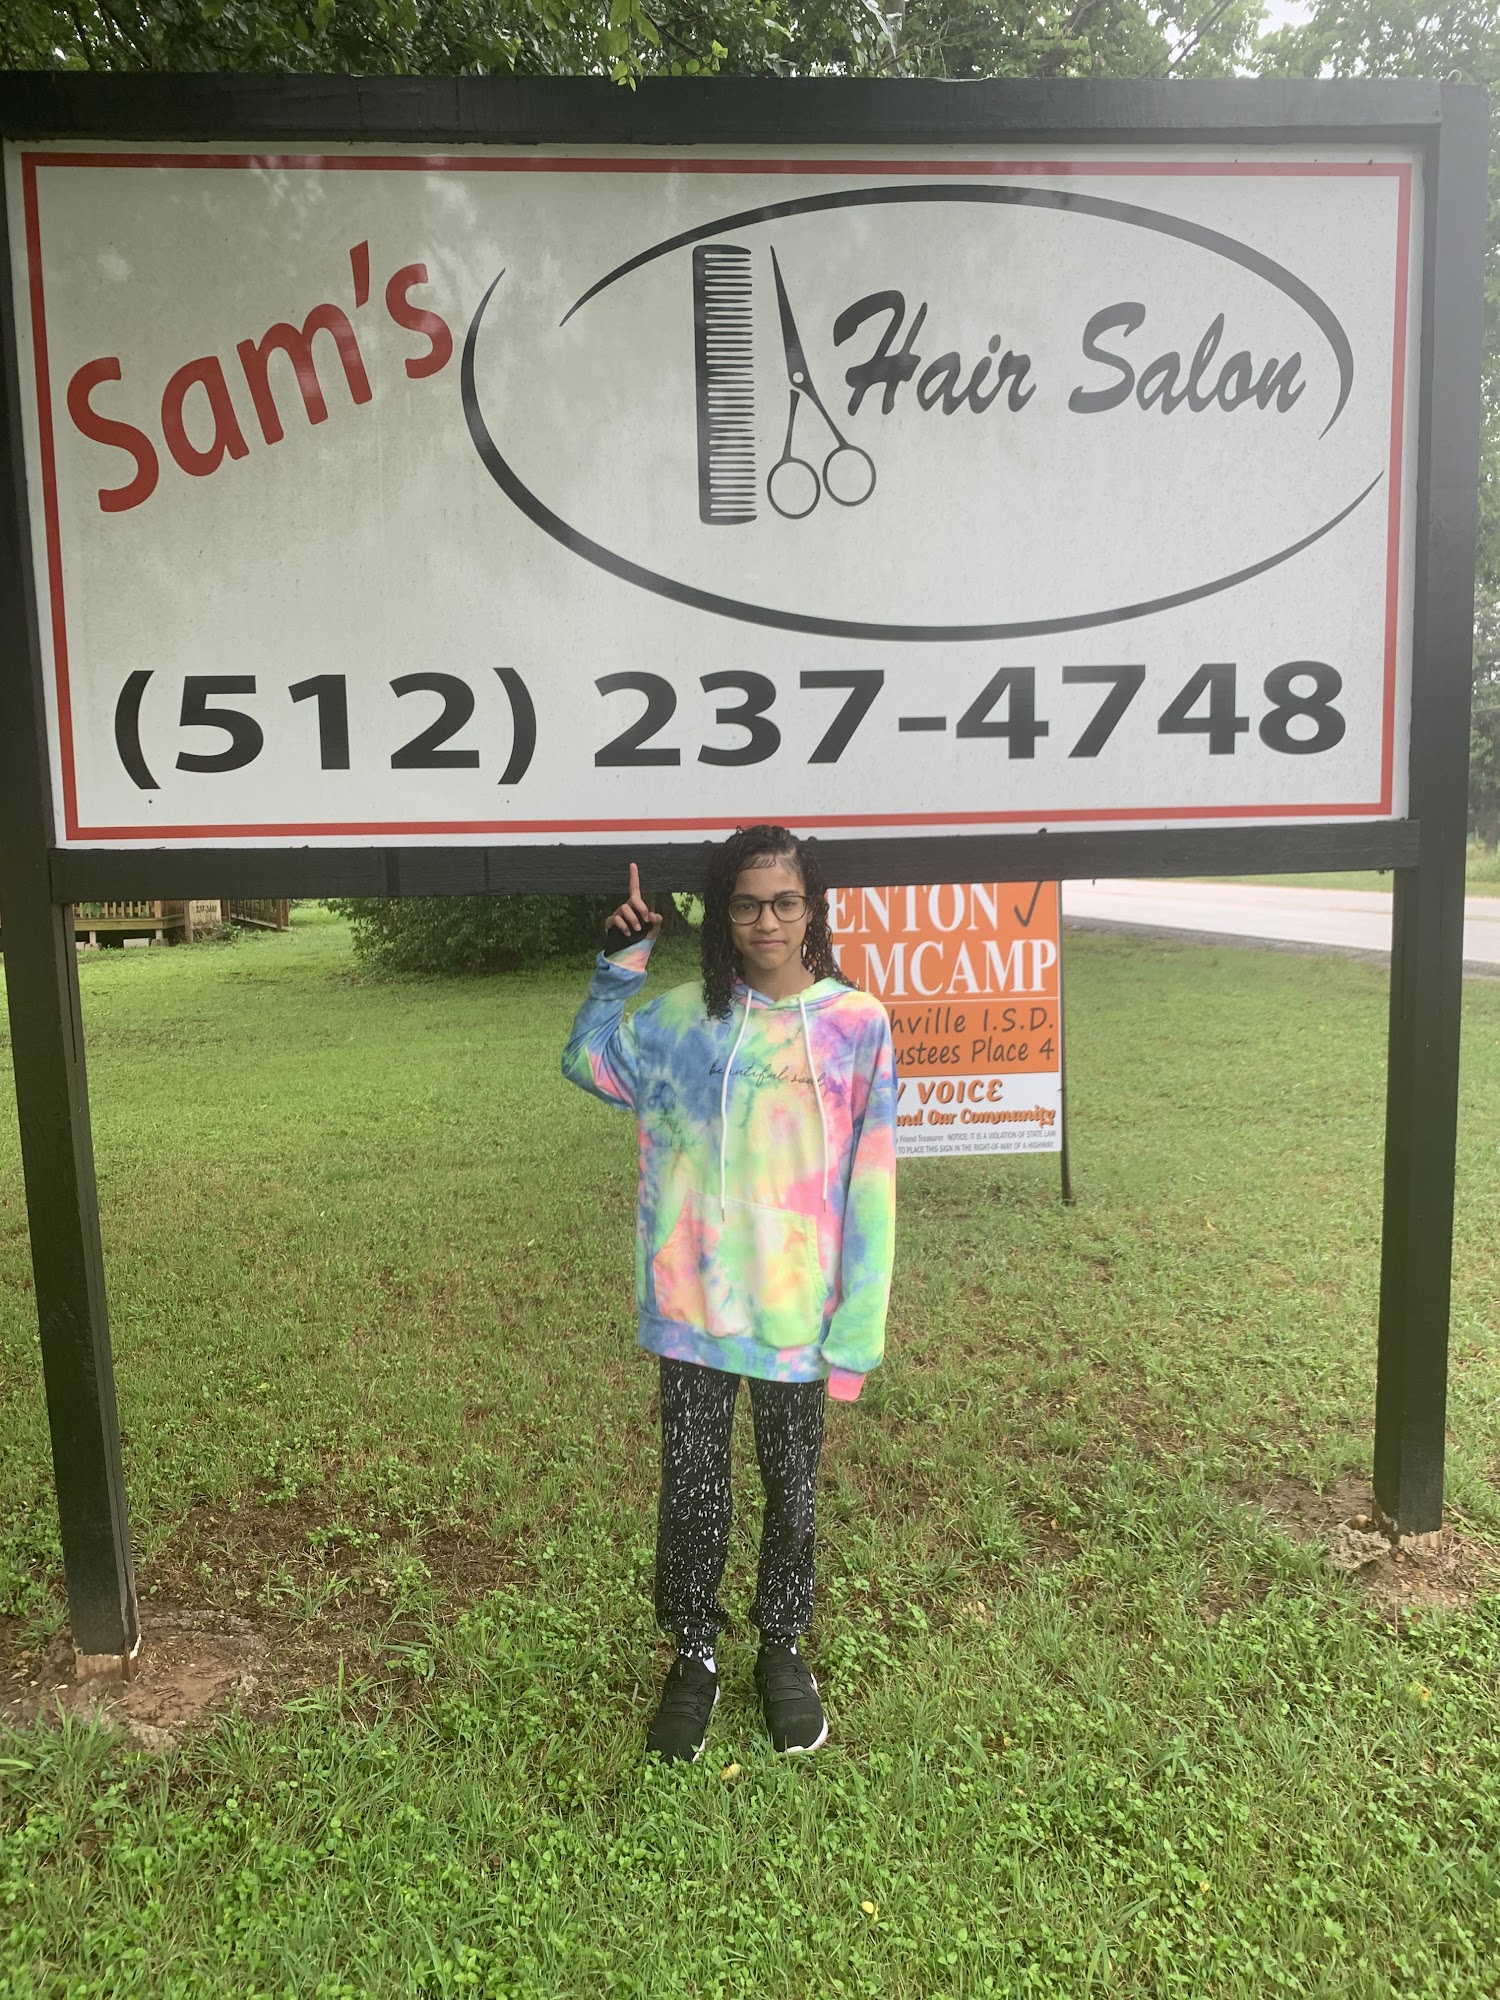 Sam's Hair Salon 503 Gazley St, Smithville Texas 78957